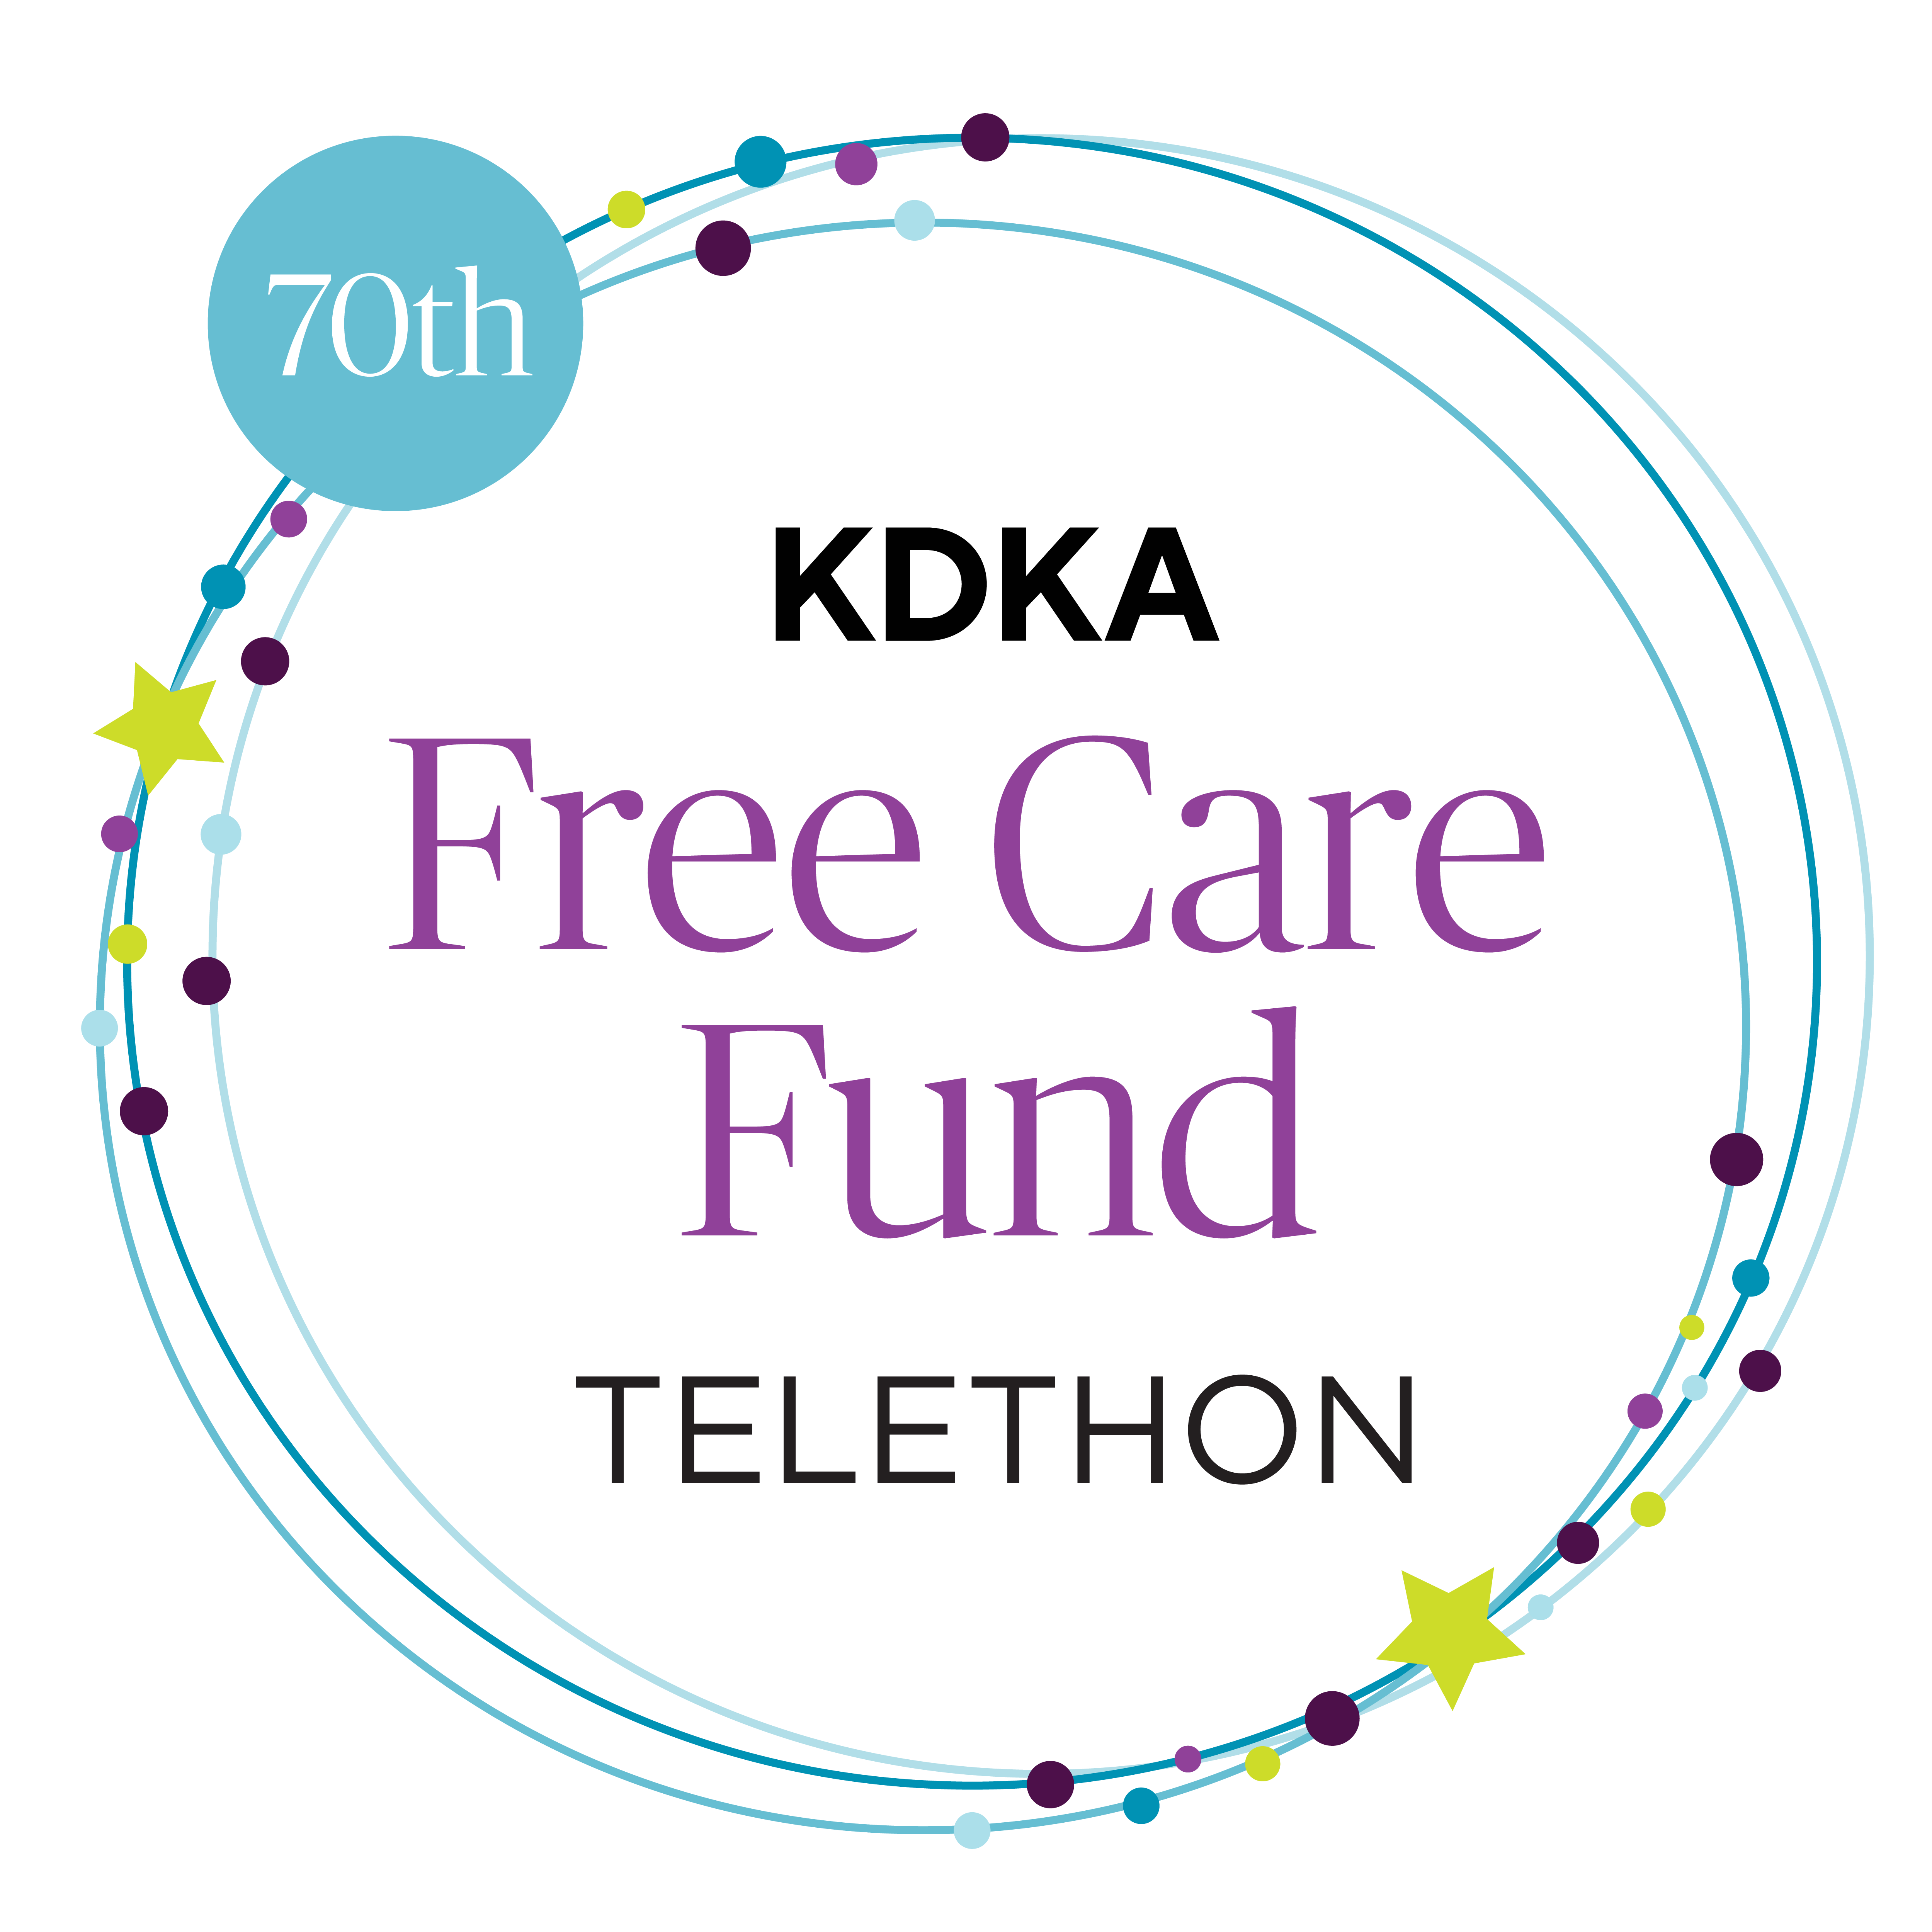 KDKA Free Care Fund Telethon